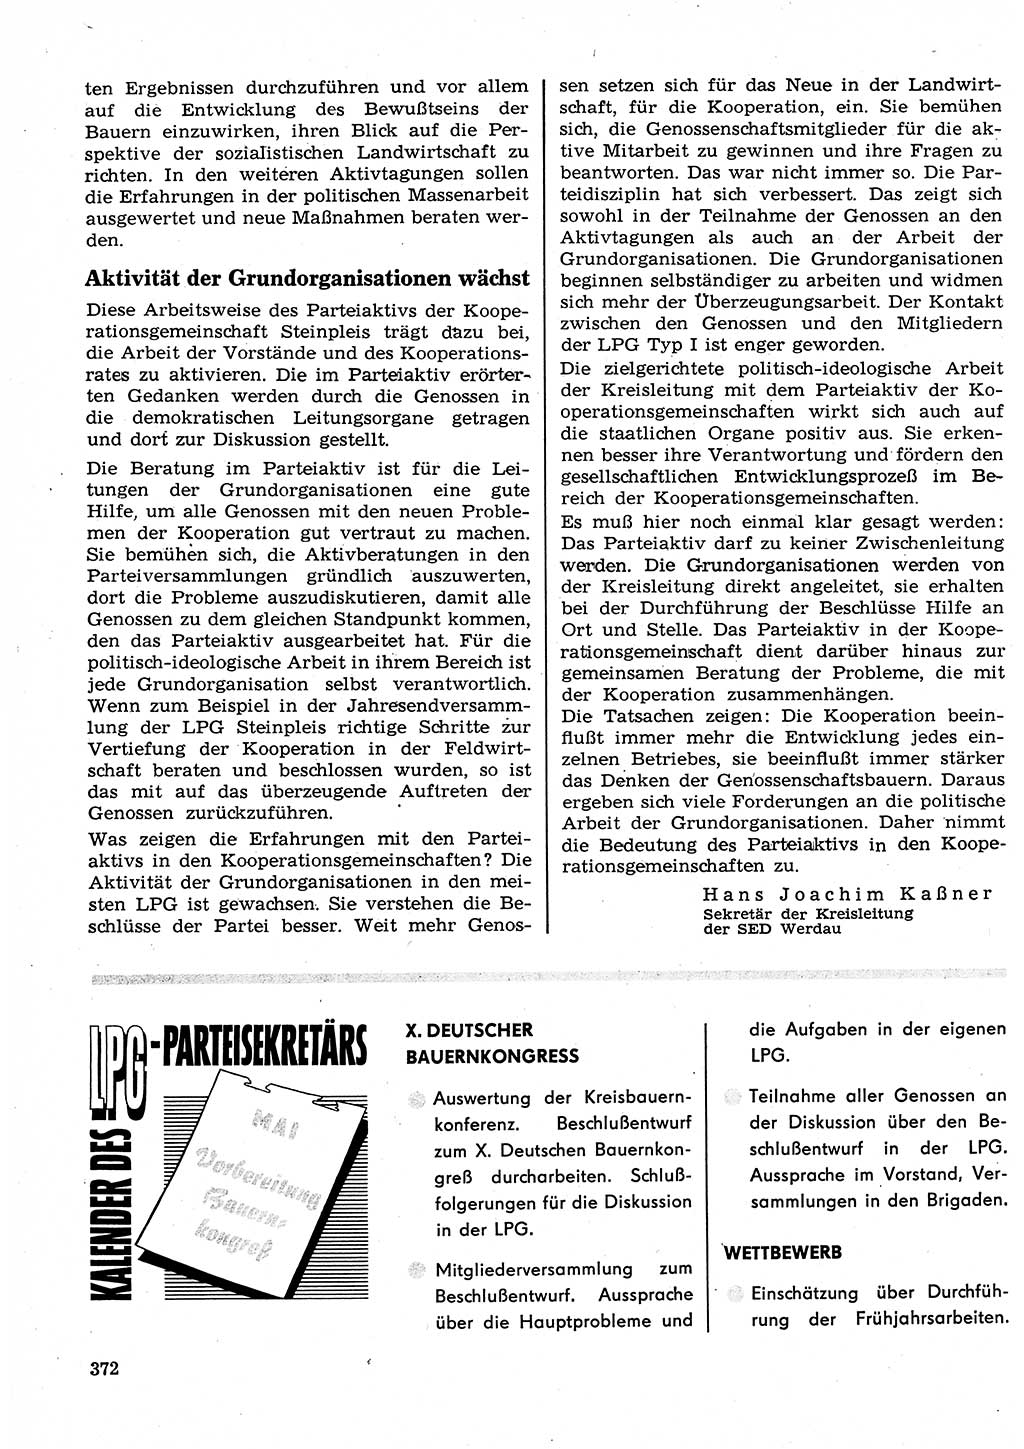 Neuer Weg (NW), Organ des Zentralkomitees (ZK) der SED (Sozialistische Einheitspartei Deutschlands) für Fragen des Parteilebens, 23. Jahrgang [Deutsche Demokratische Republik (DDR)] 1968, Seite 372 (NW ZK SED DDR 1968, S. 372)